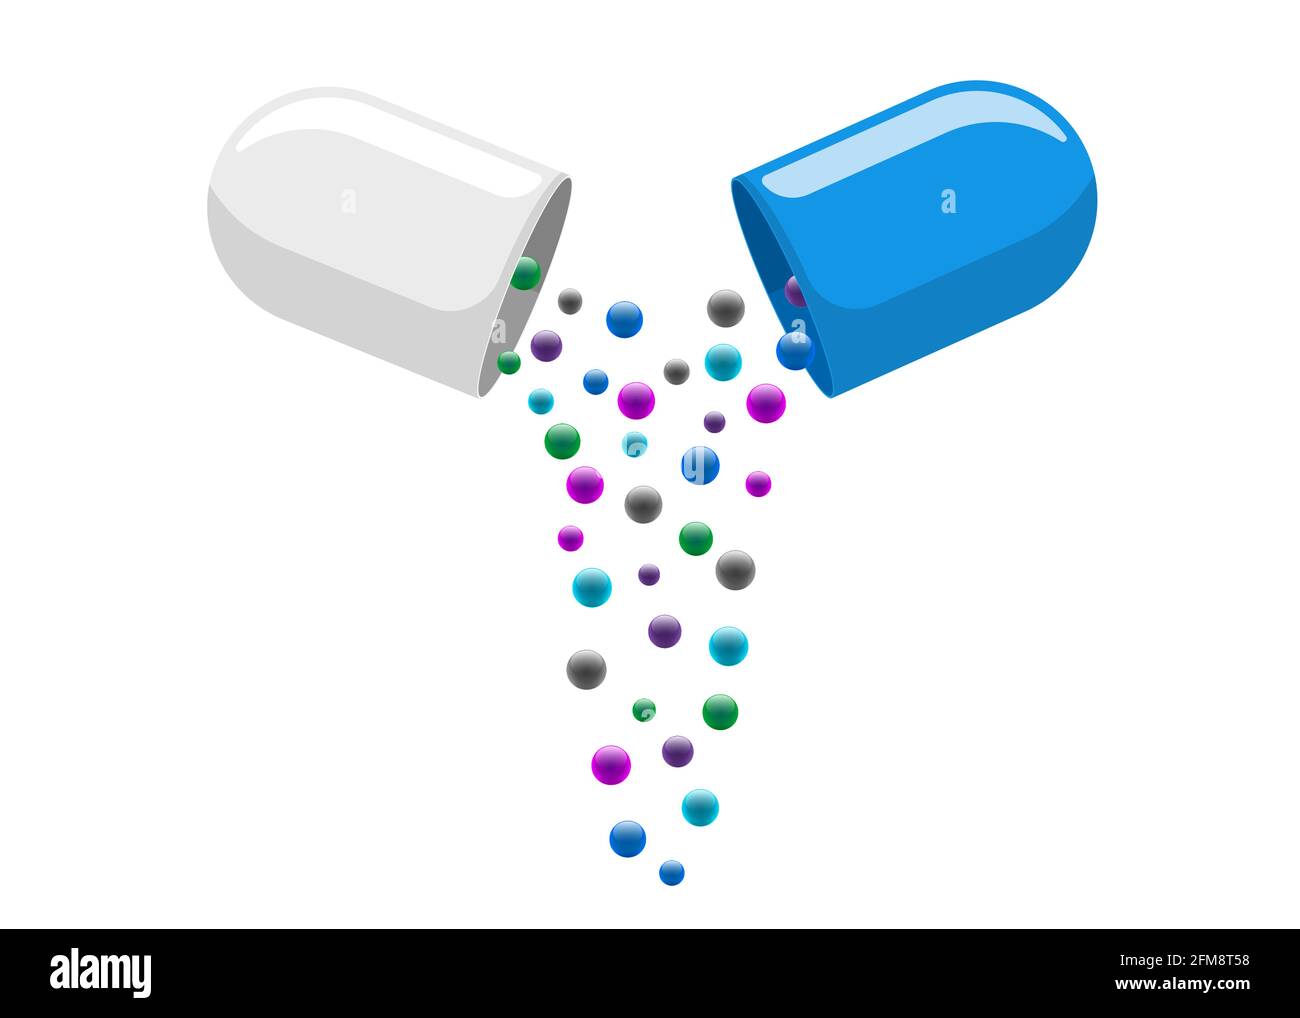 Medizinische Kapsel Pille geöffnet mit herausfallenden bunten Molekülen. Medizin Medikament Vitamin verbessern Gesundheitskonzept. Weiße und blaue pharmazeutische Antibiotika-Hälften mit Partikeln Vektor isolierte Abbildung Stock Vektor